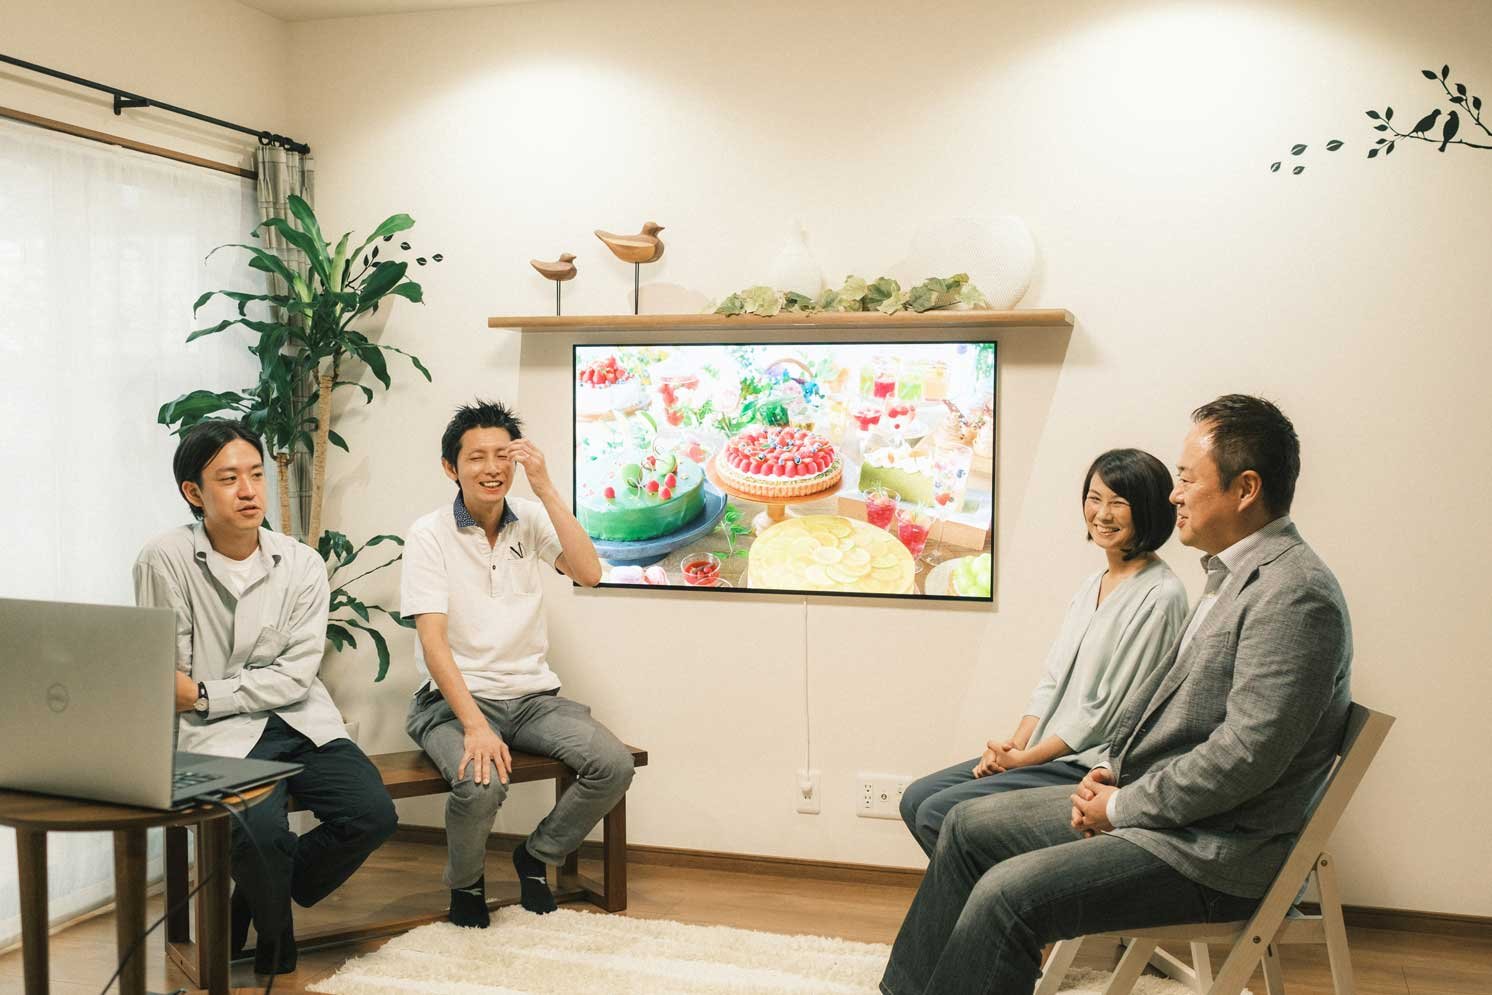 左から飯田氏、佐藤氏、野村氏、中澤氏 | Make New Magazine「未来の定番」をつくるために、パナソニックのリアルな姿を伝えるメディア